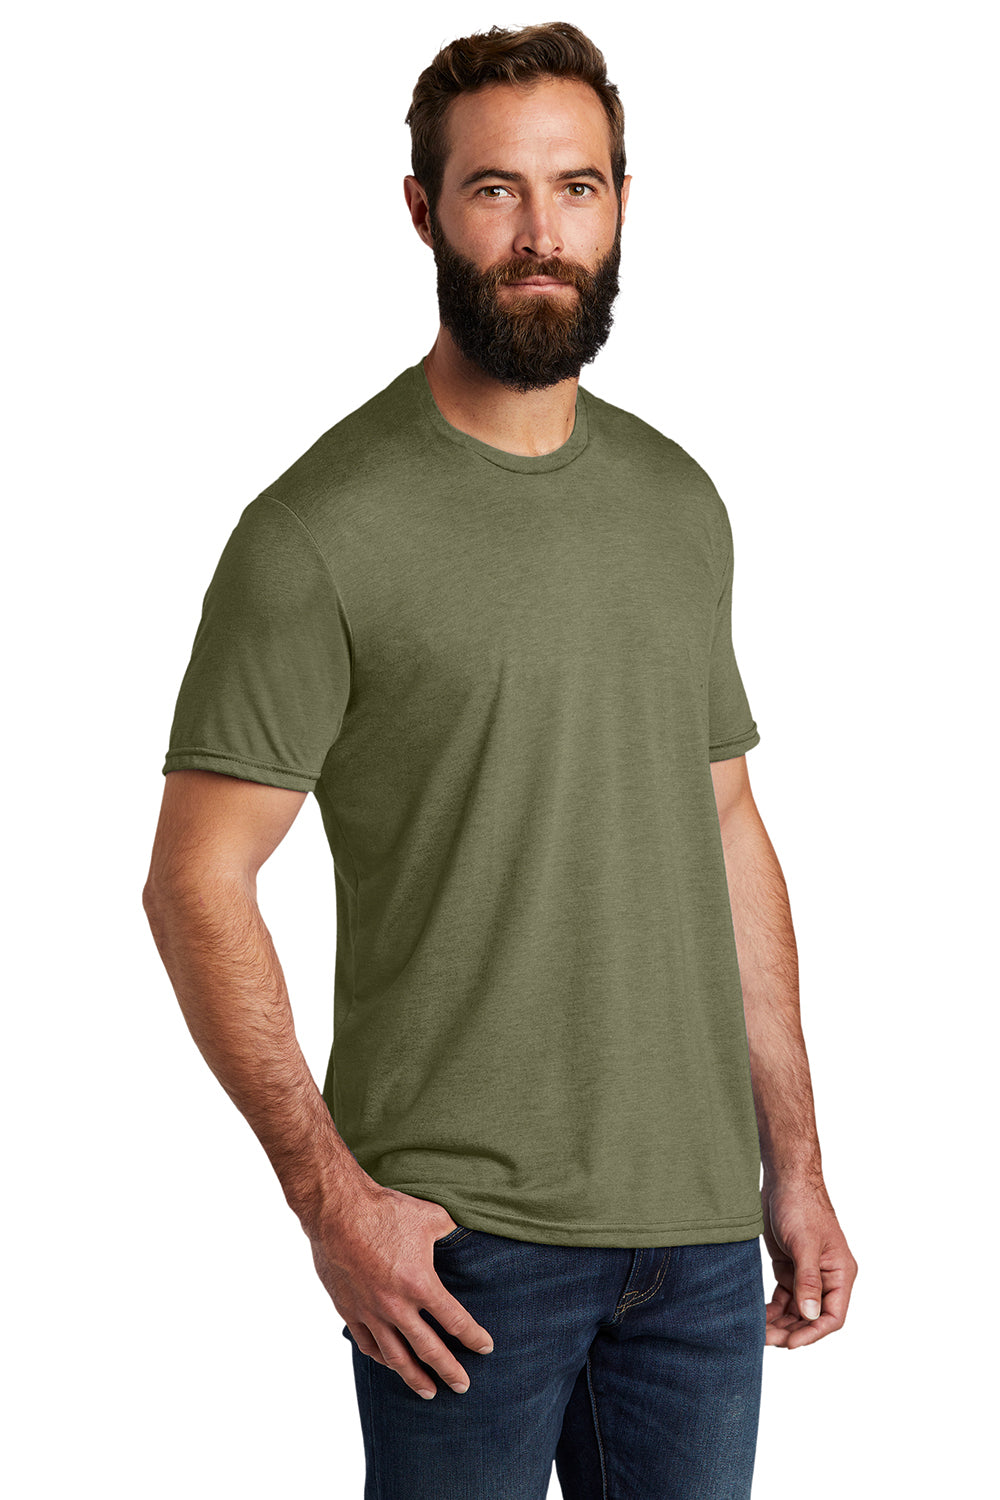 Allmade AL2004 Mens Short Sleeve Crewneck T-Shirt Olive You Green Model 3Q